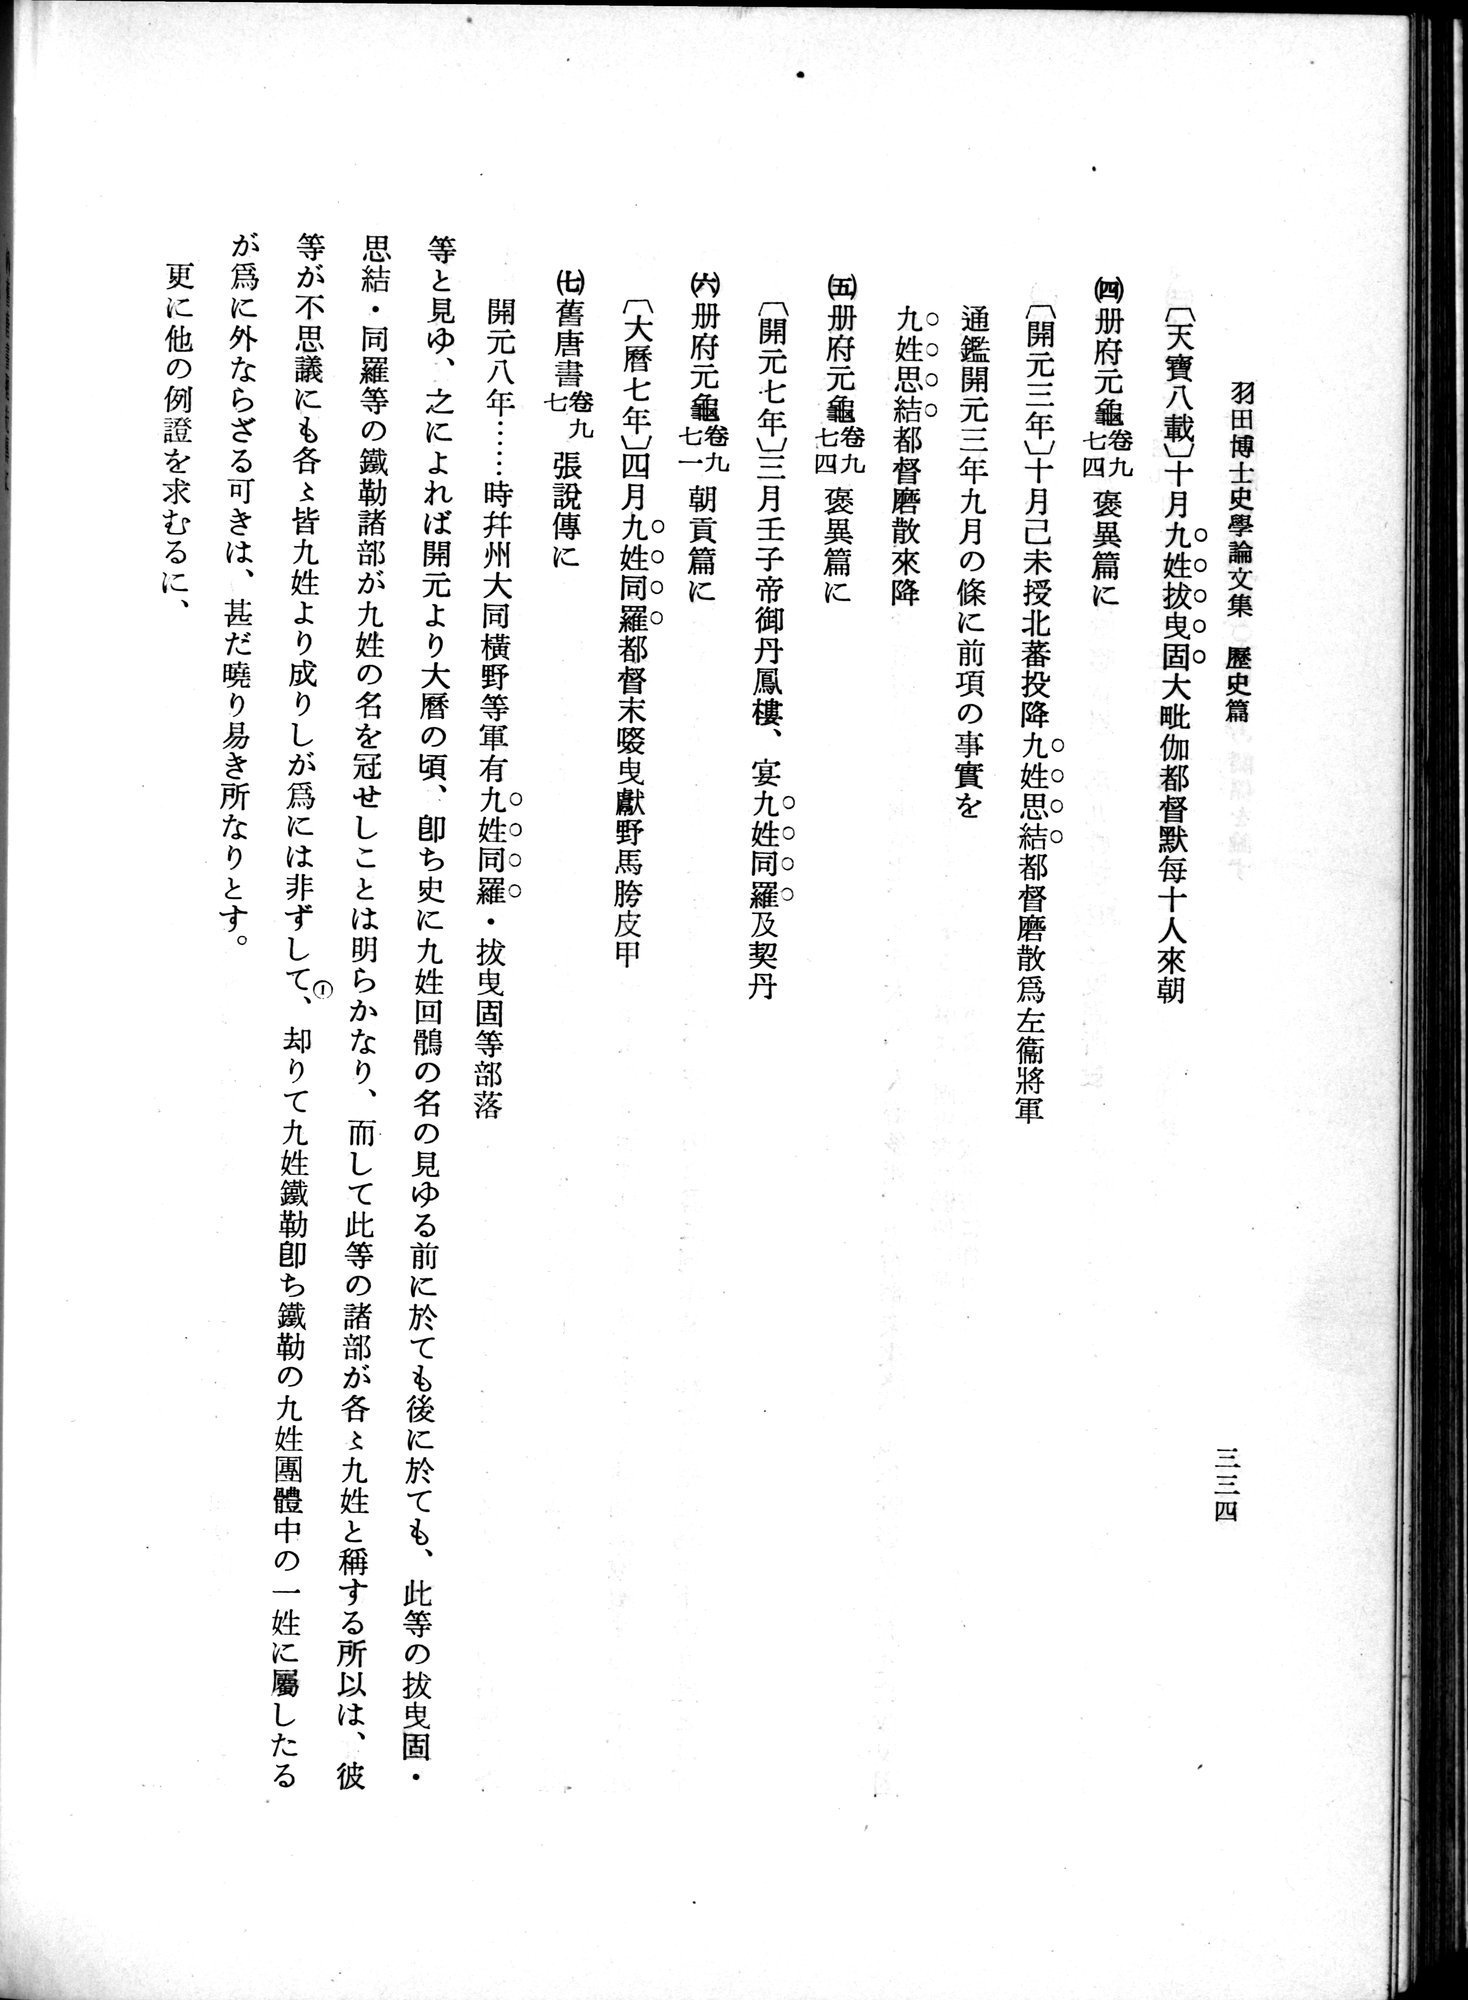 羽田博士史学論文集 : vol.1 / Page 372 (Grayscale High Resolution Image)